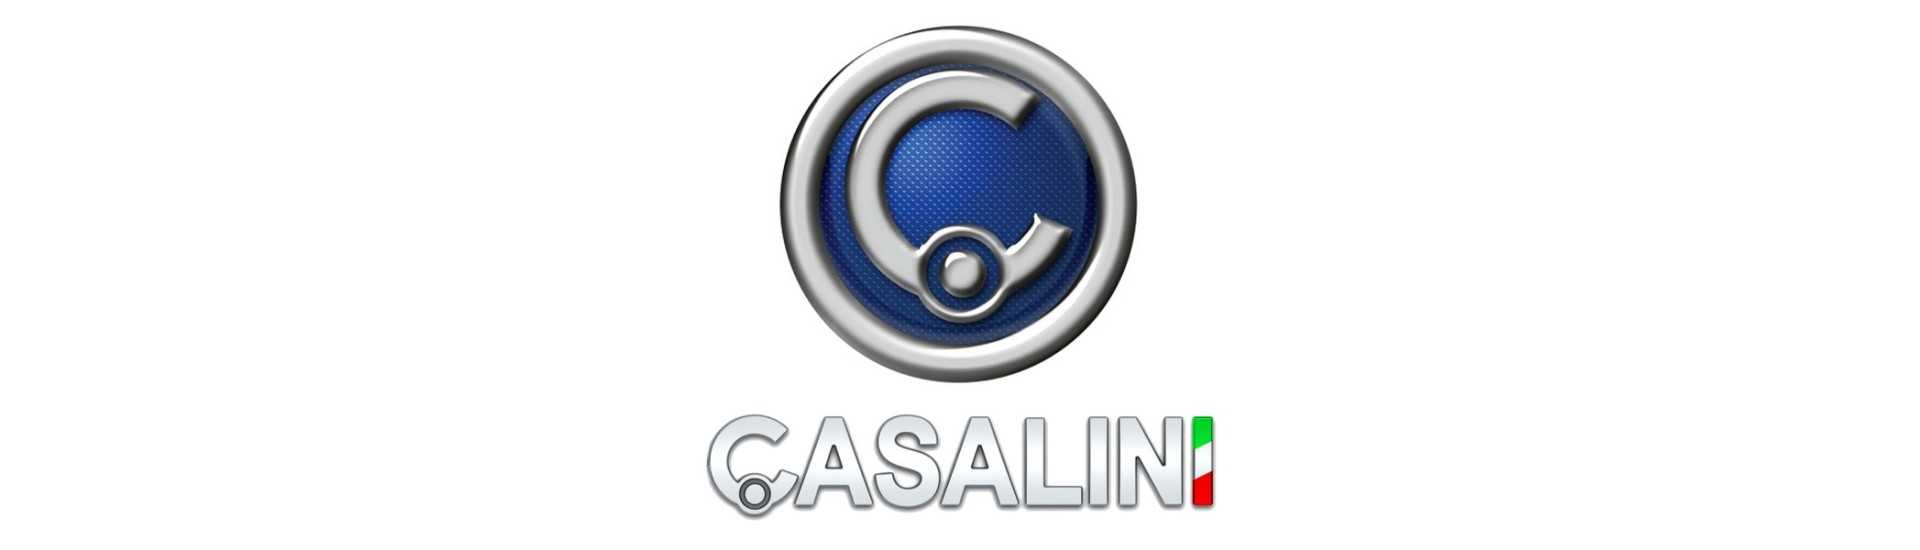 Garniture de coffre au meilleur prix pour voiture sans permis Casalini